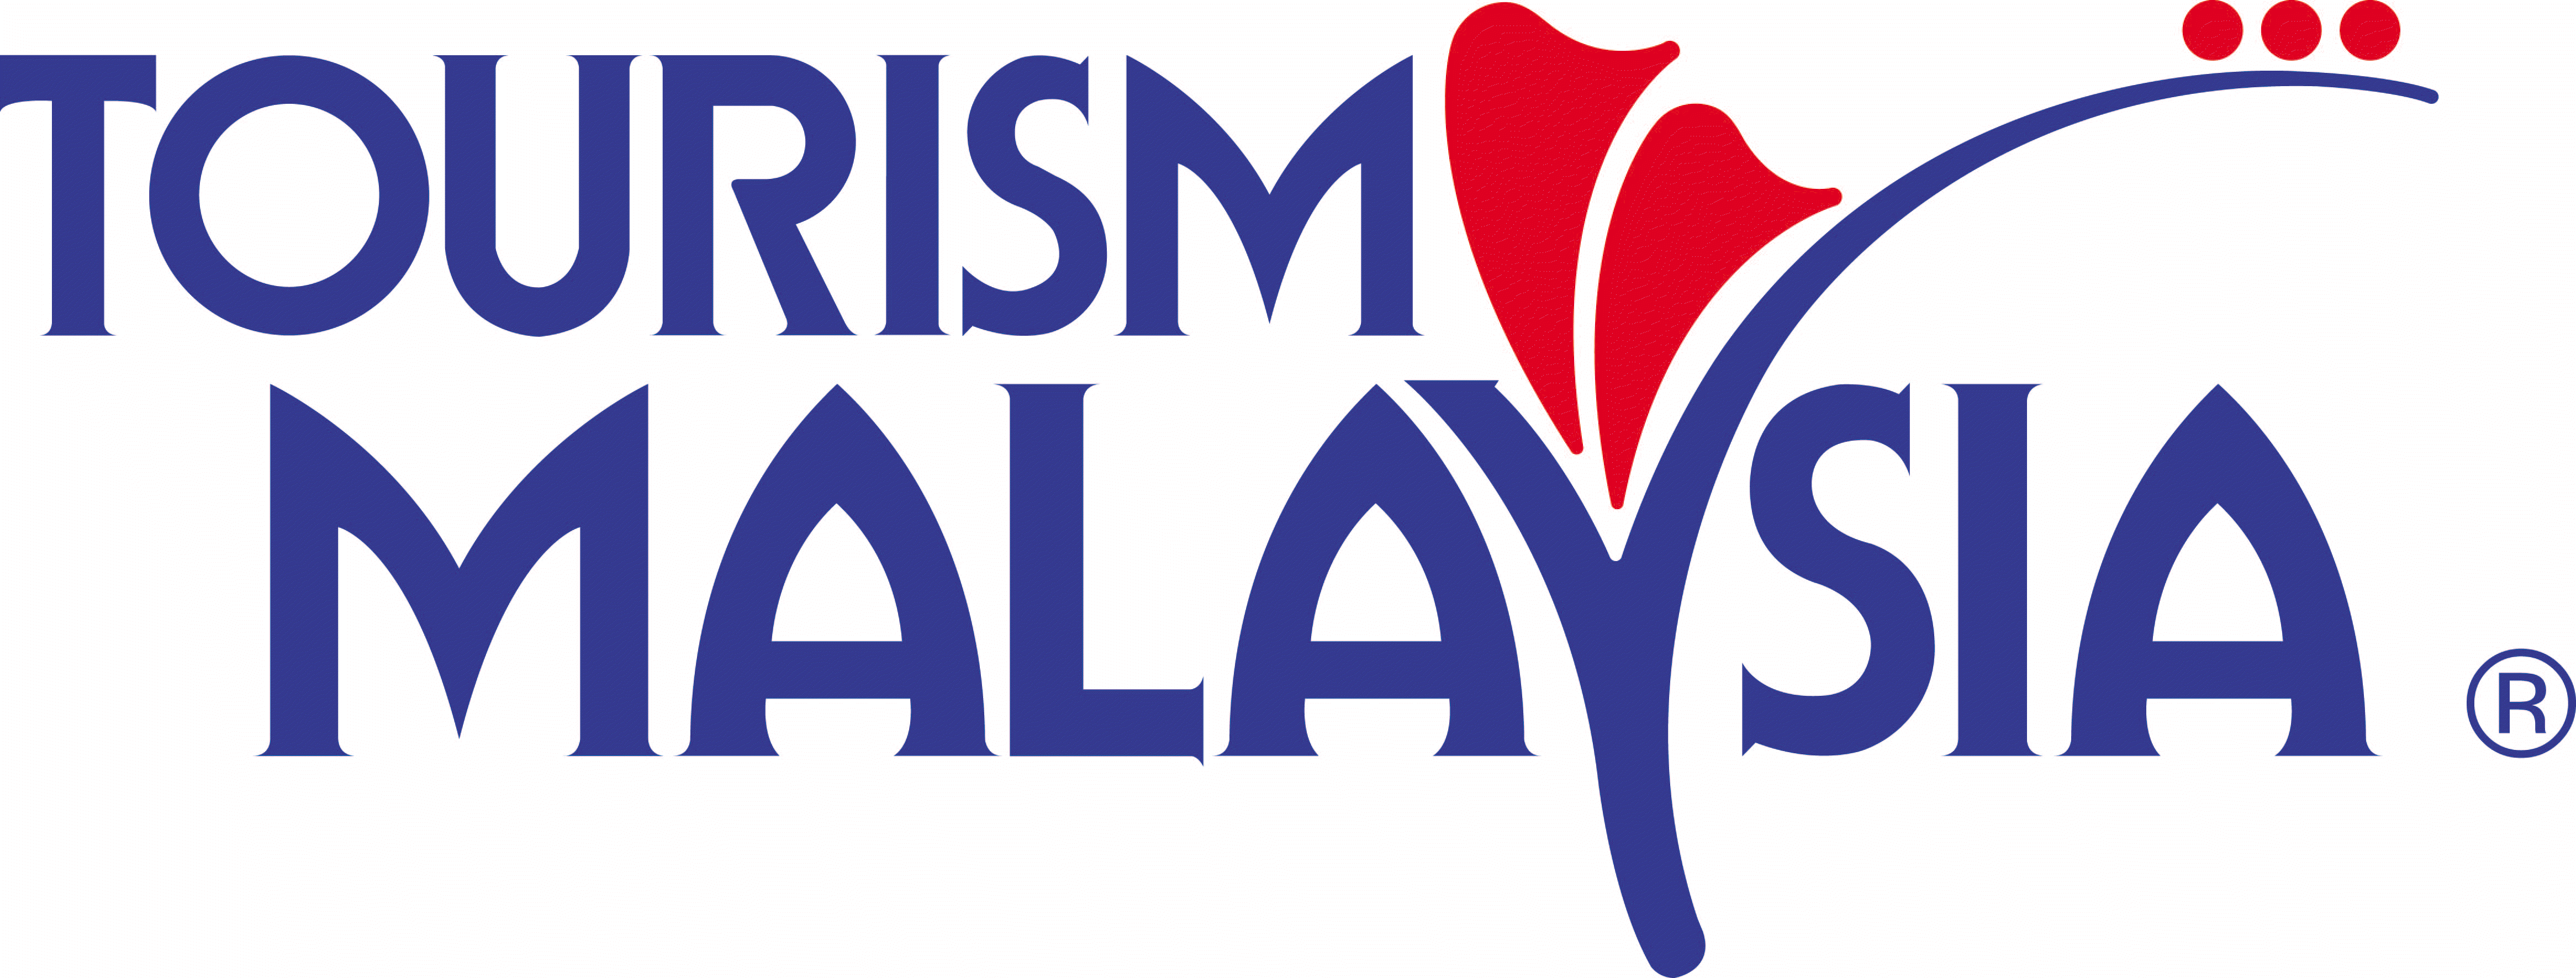 LOGO tourism malaysia1